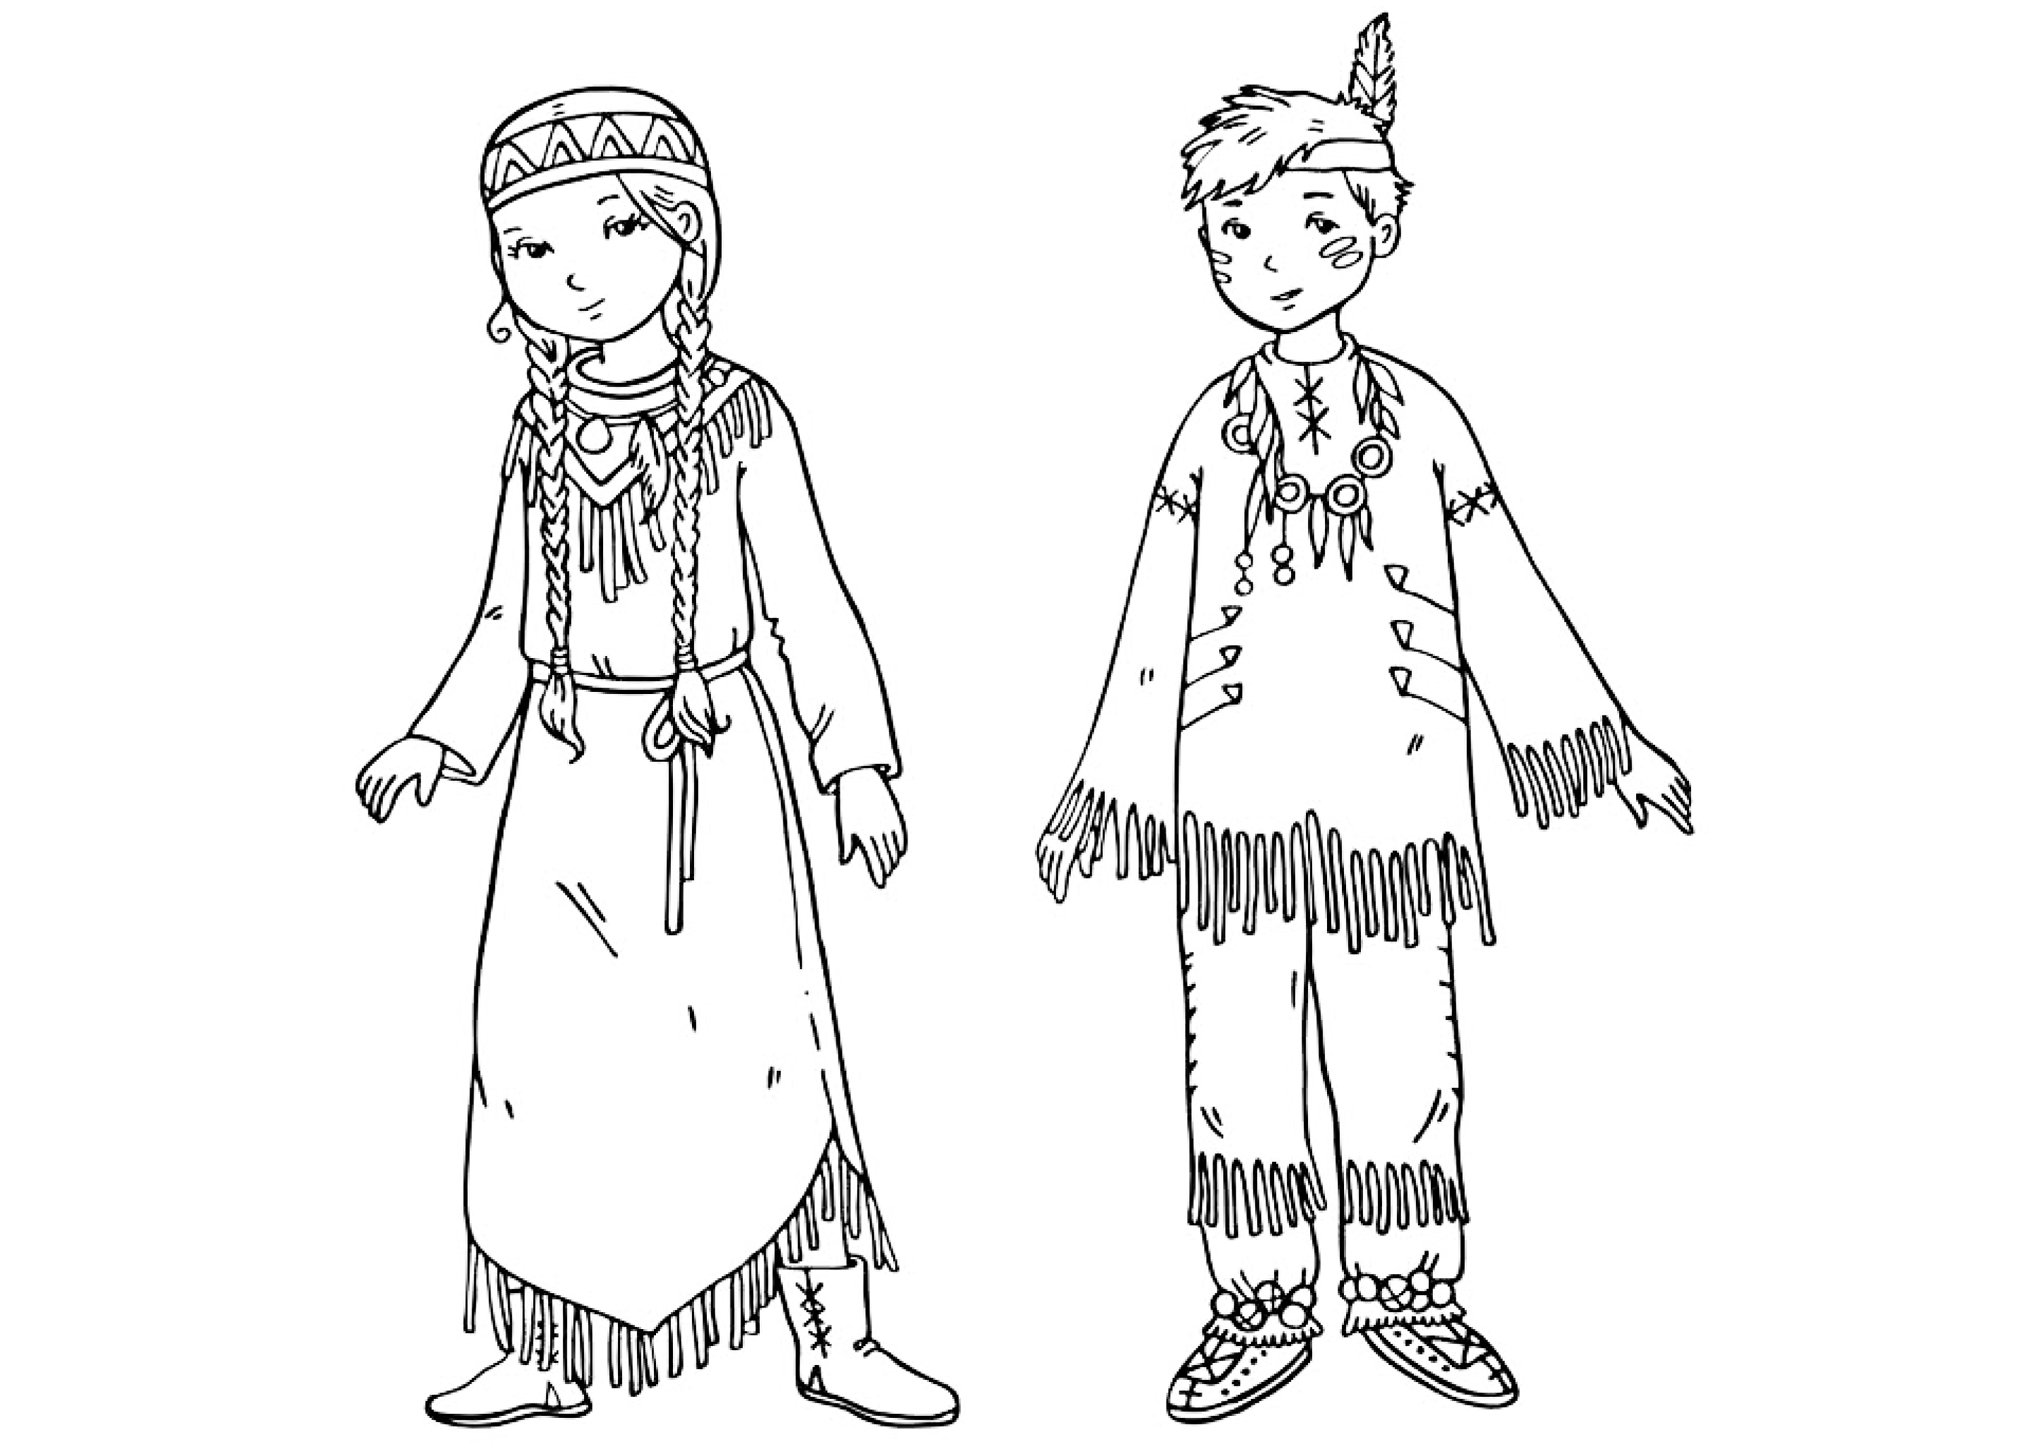 Bashkir national costume for children #14